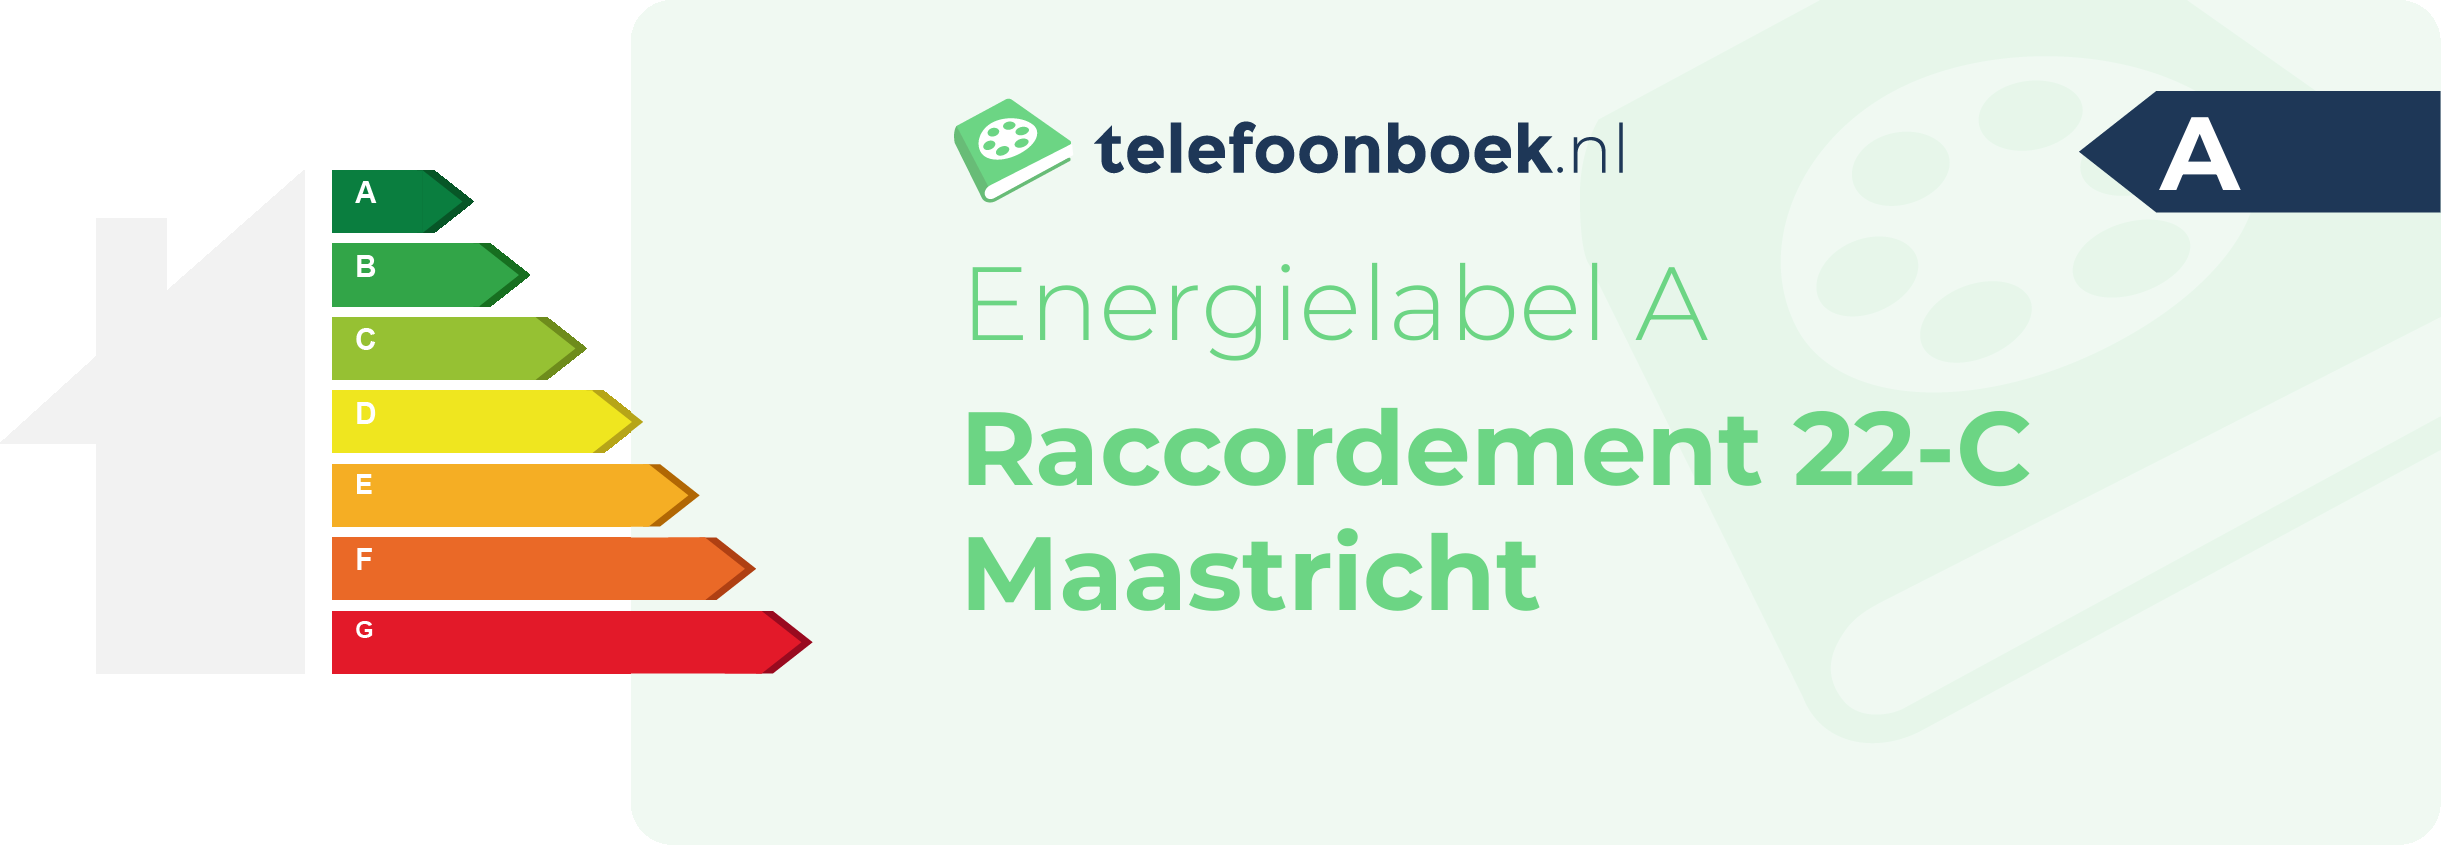 Energielabel Raccordement 22-C Maastricht